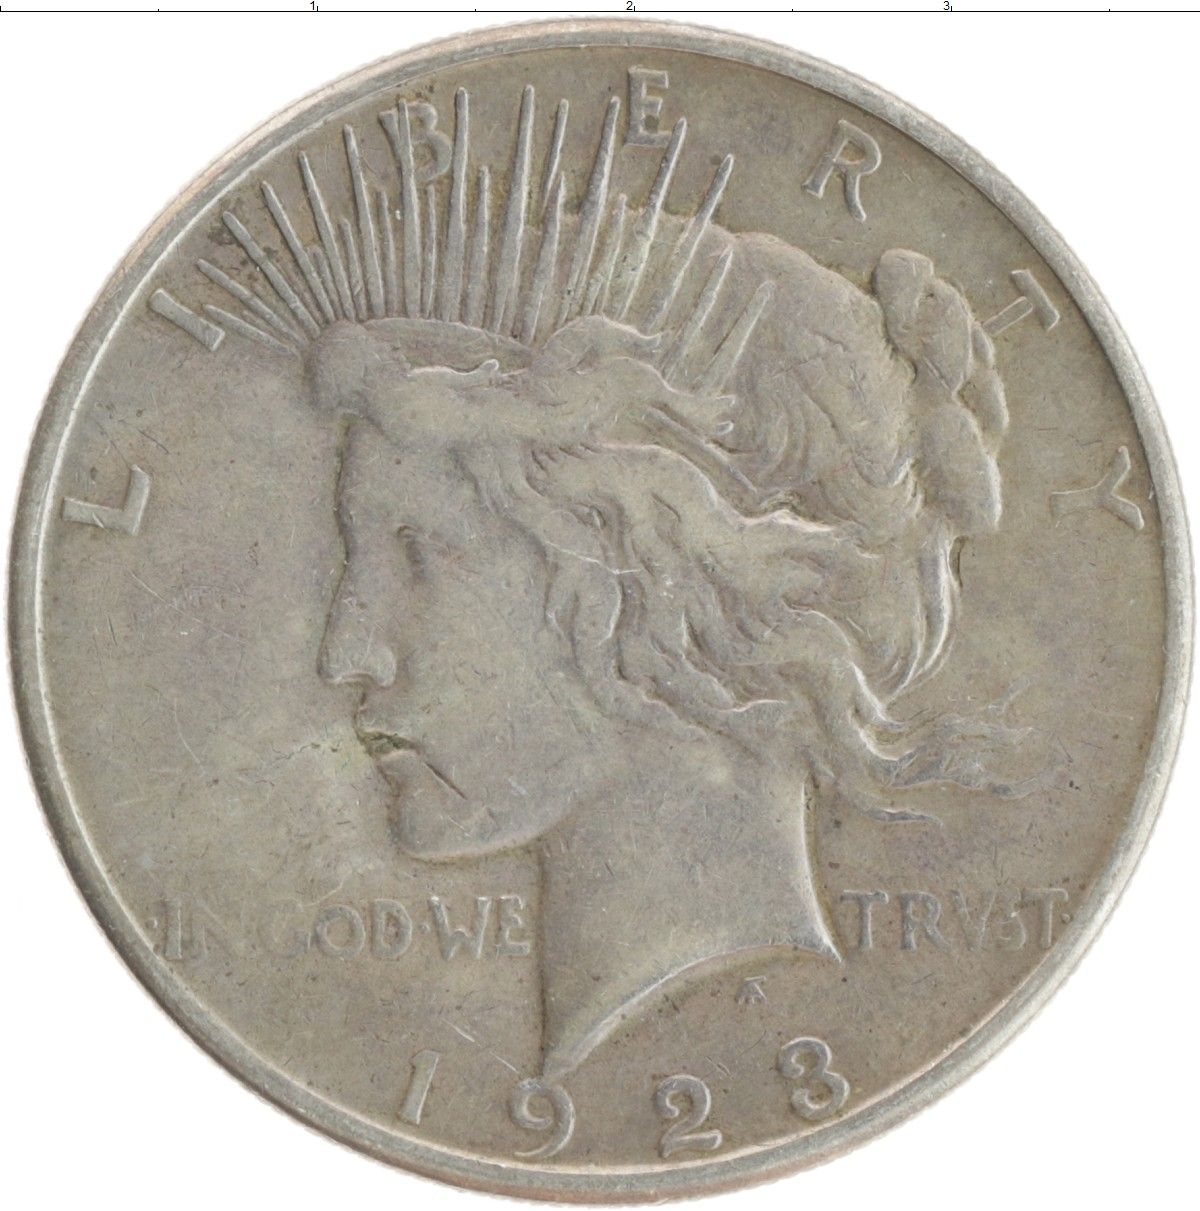 Доллар америке цена. Золотая монета США 1923 года. США 1923. Доллар Мирный 1925.